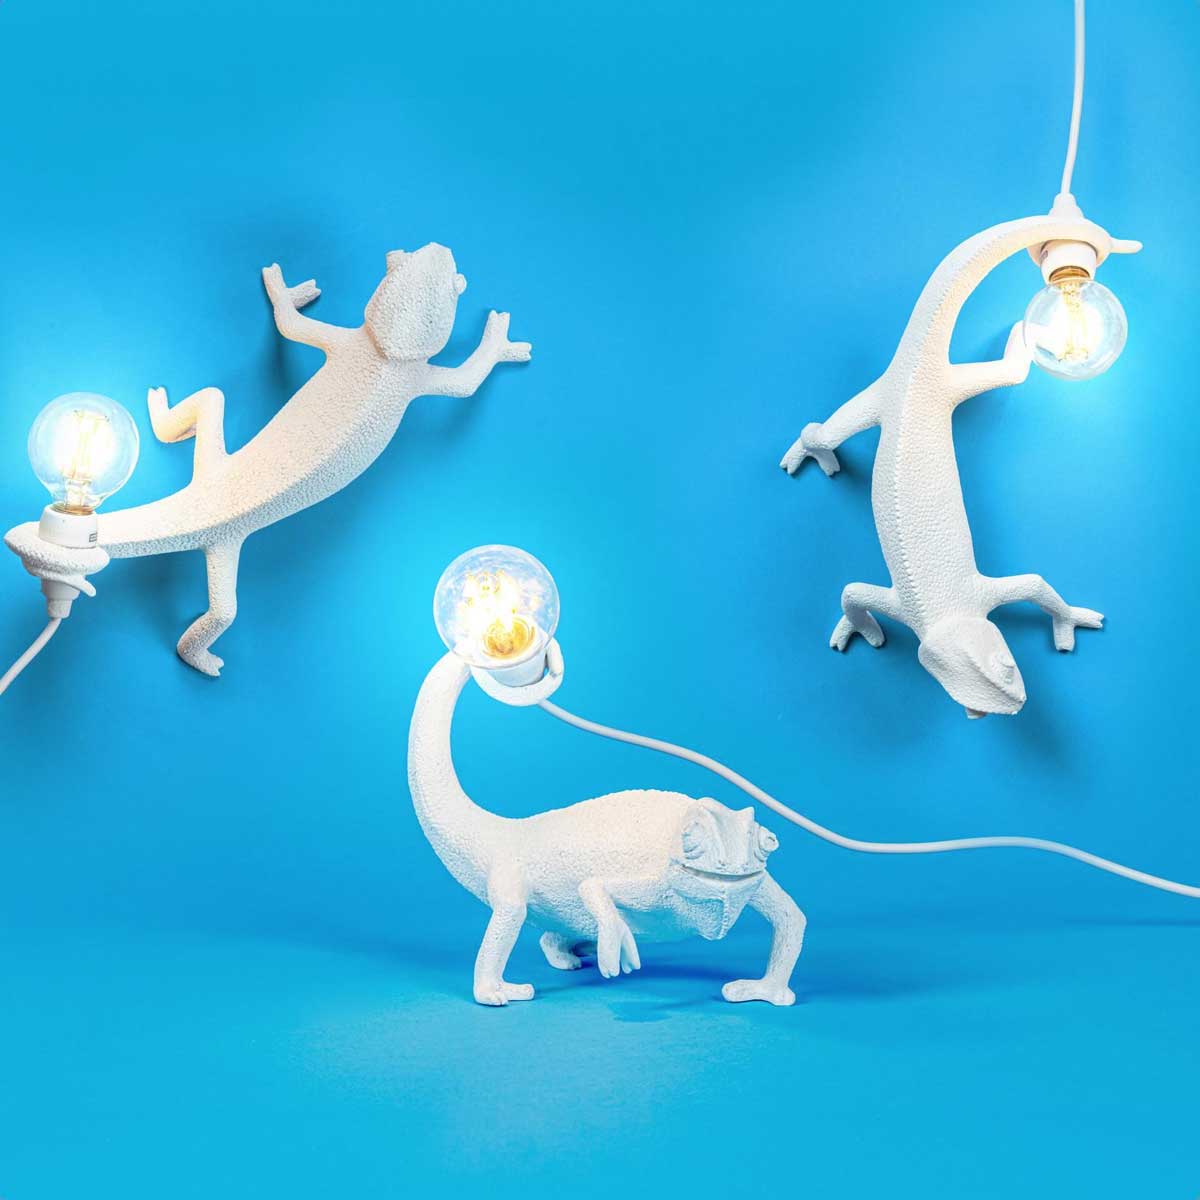 Chameleon Lamp Going Down - Seletti